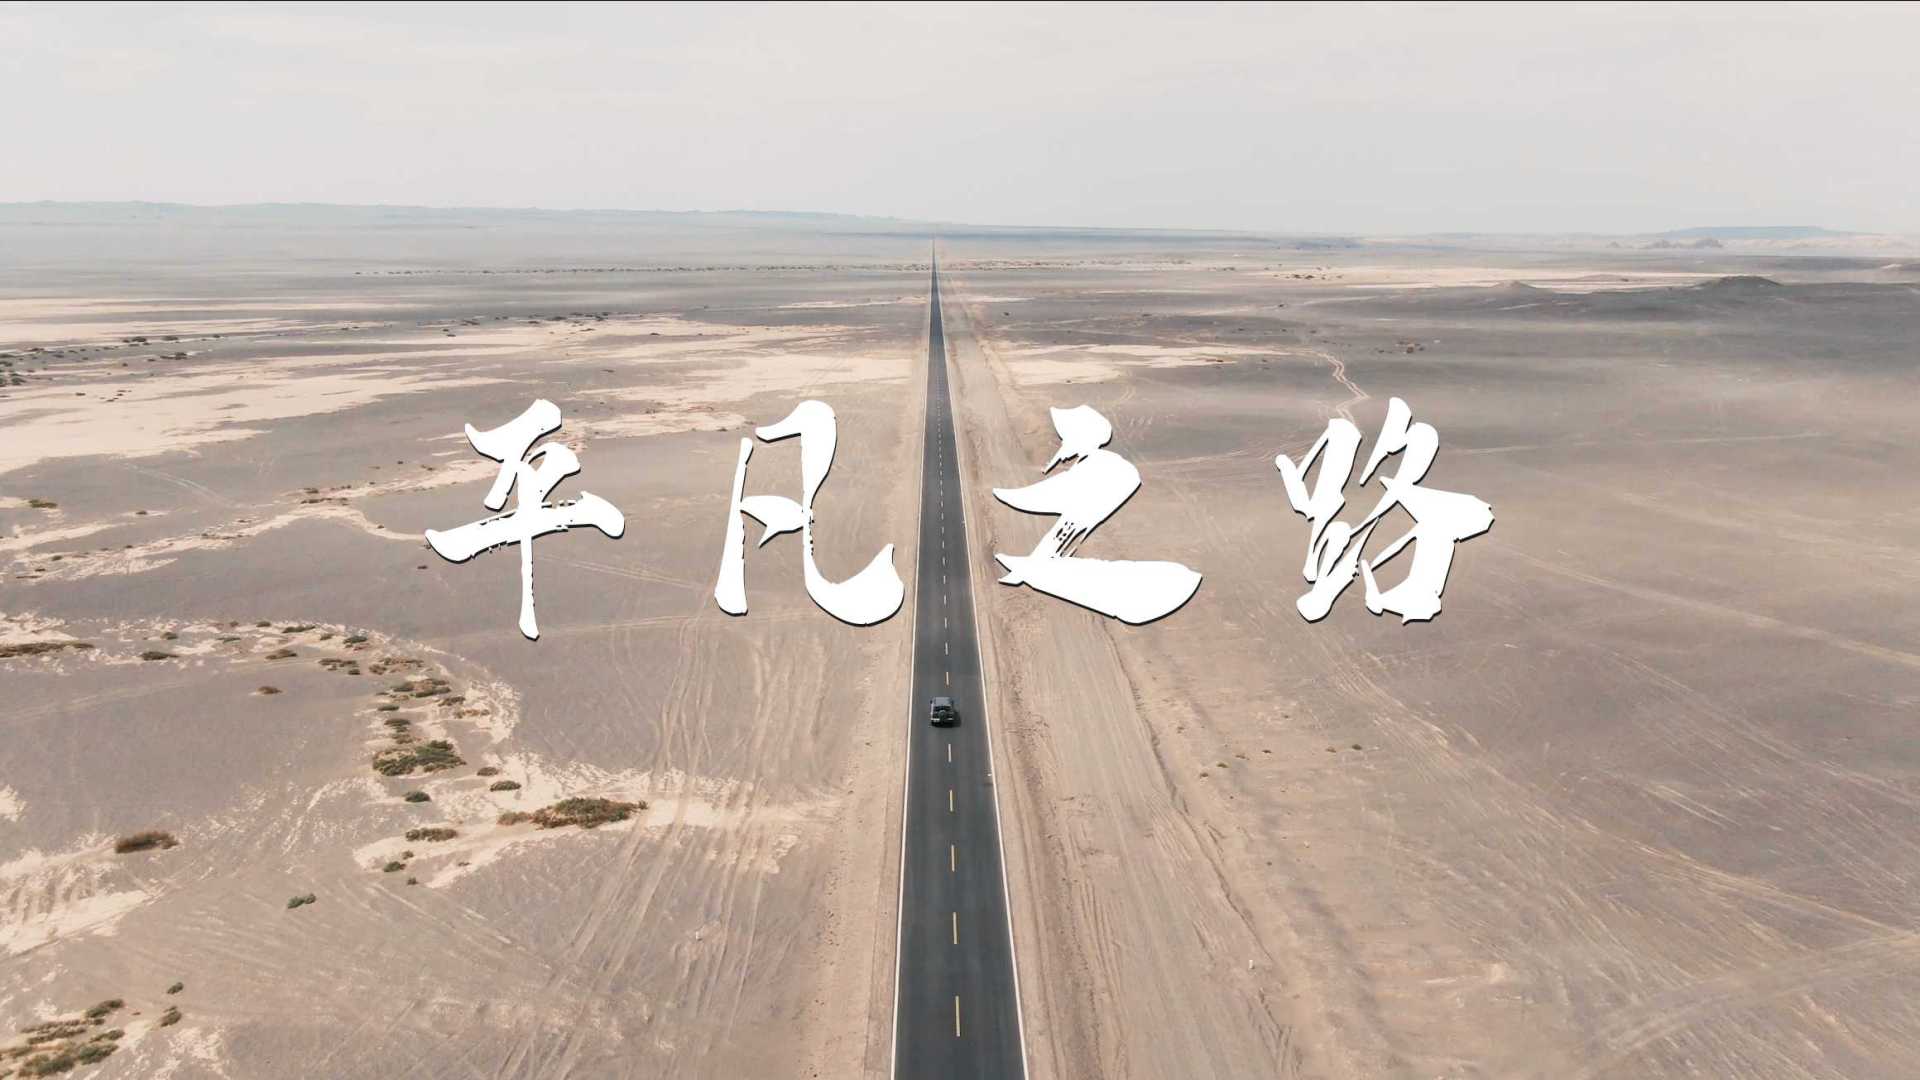 《孤独的平凡之路》 -- 新疆大海道无人区公路旅行短片